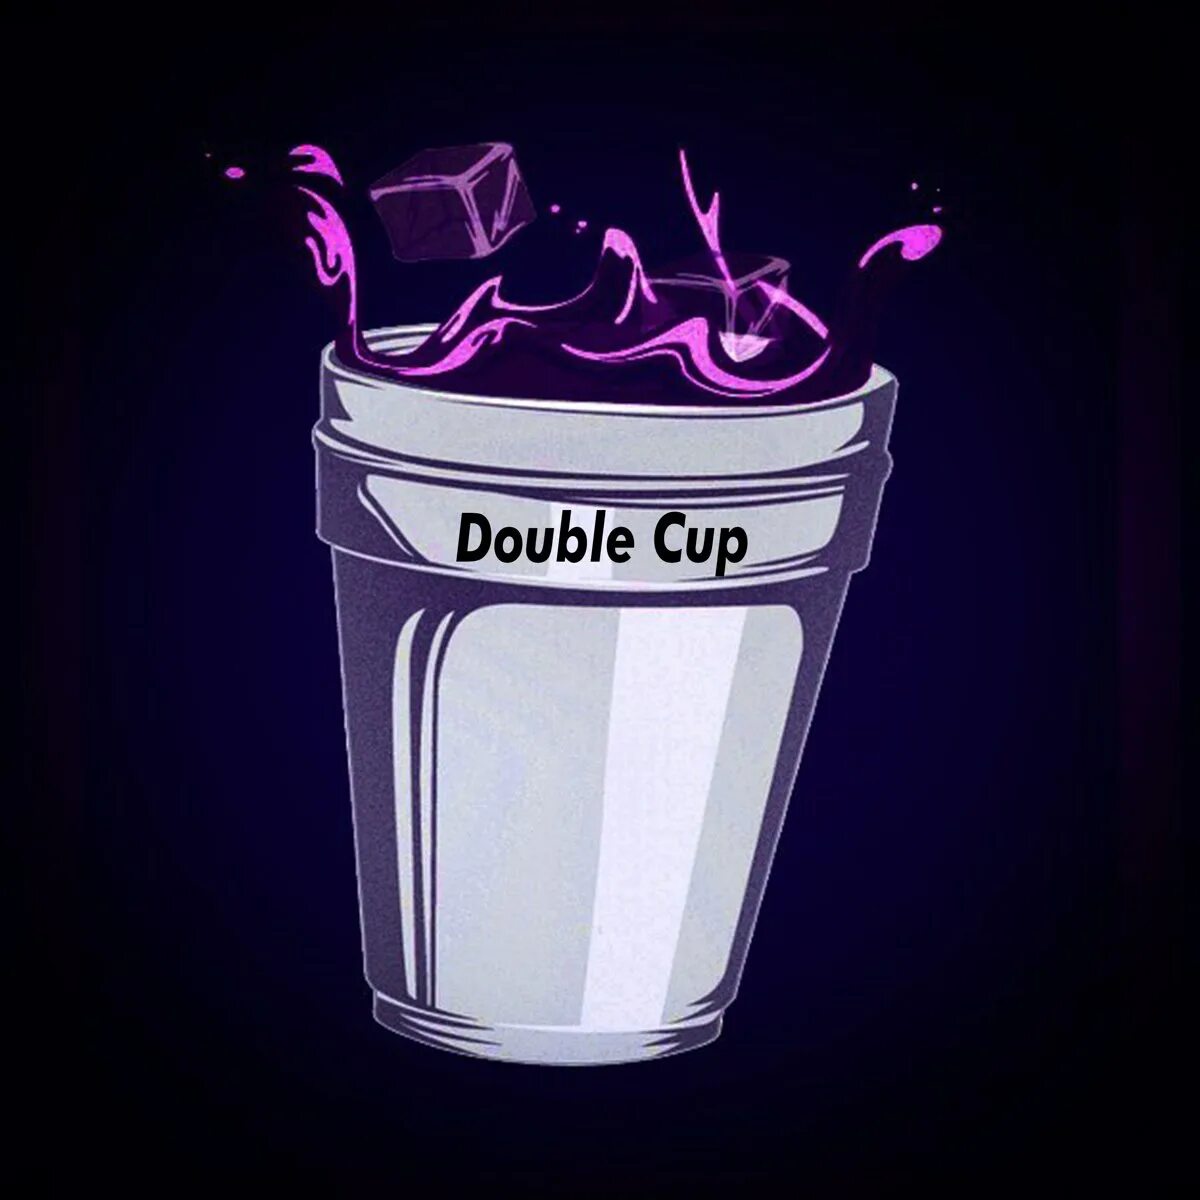 Дабл кап текст. Лин Дабл кап. Codeine Double Cup. Lean Double Cup. Double Cup стакан 3d.